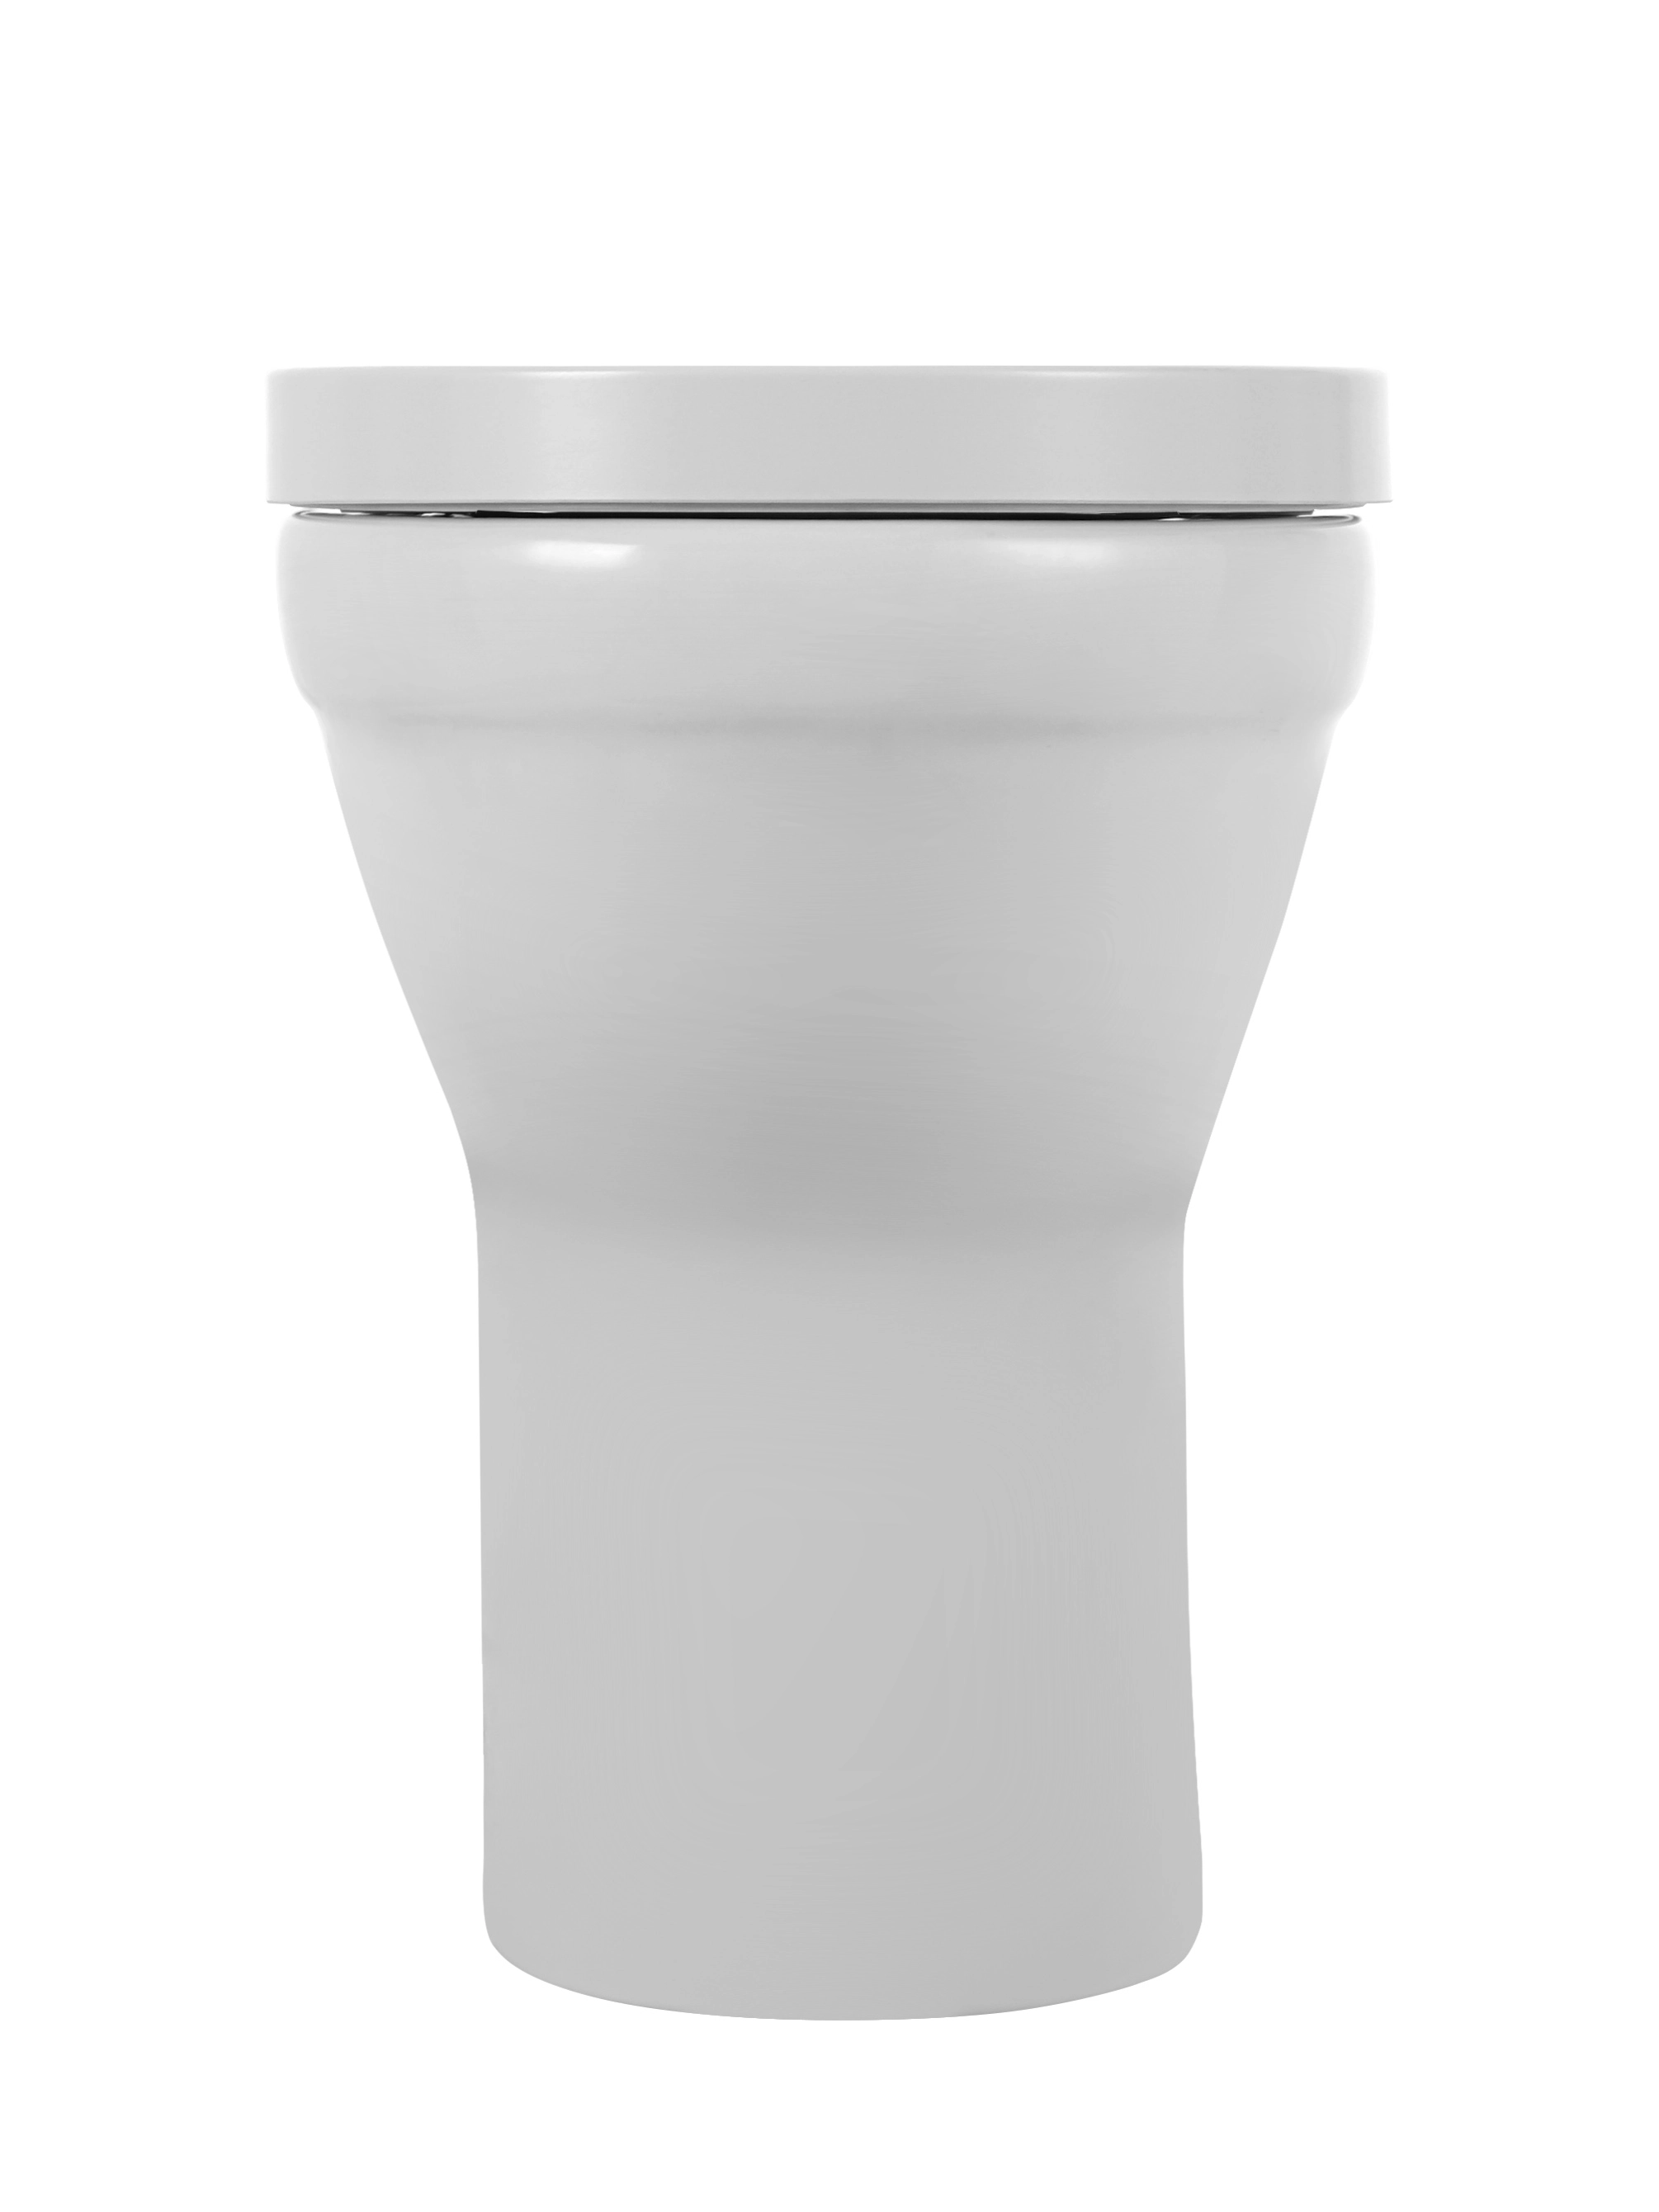 Stand-WC Tiefspül Verosan Weiß Cozy Sitz OBI bei inkl. kaufen Spülrandlos erhöht